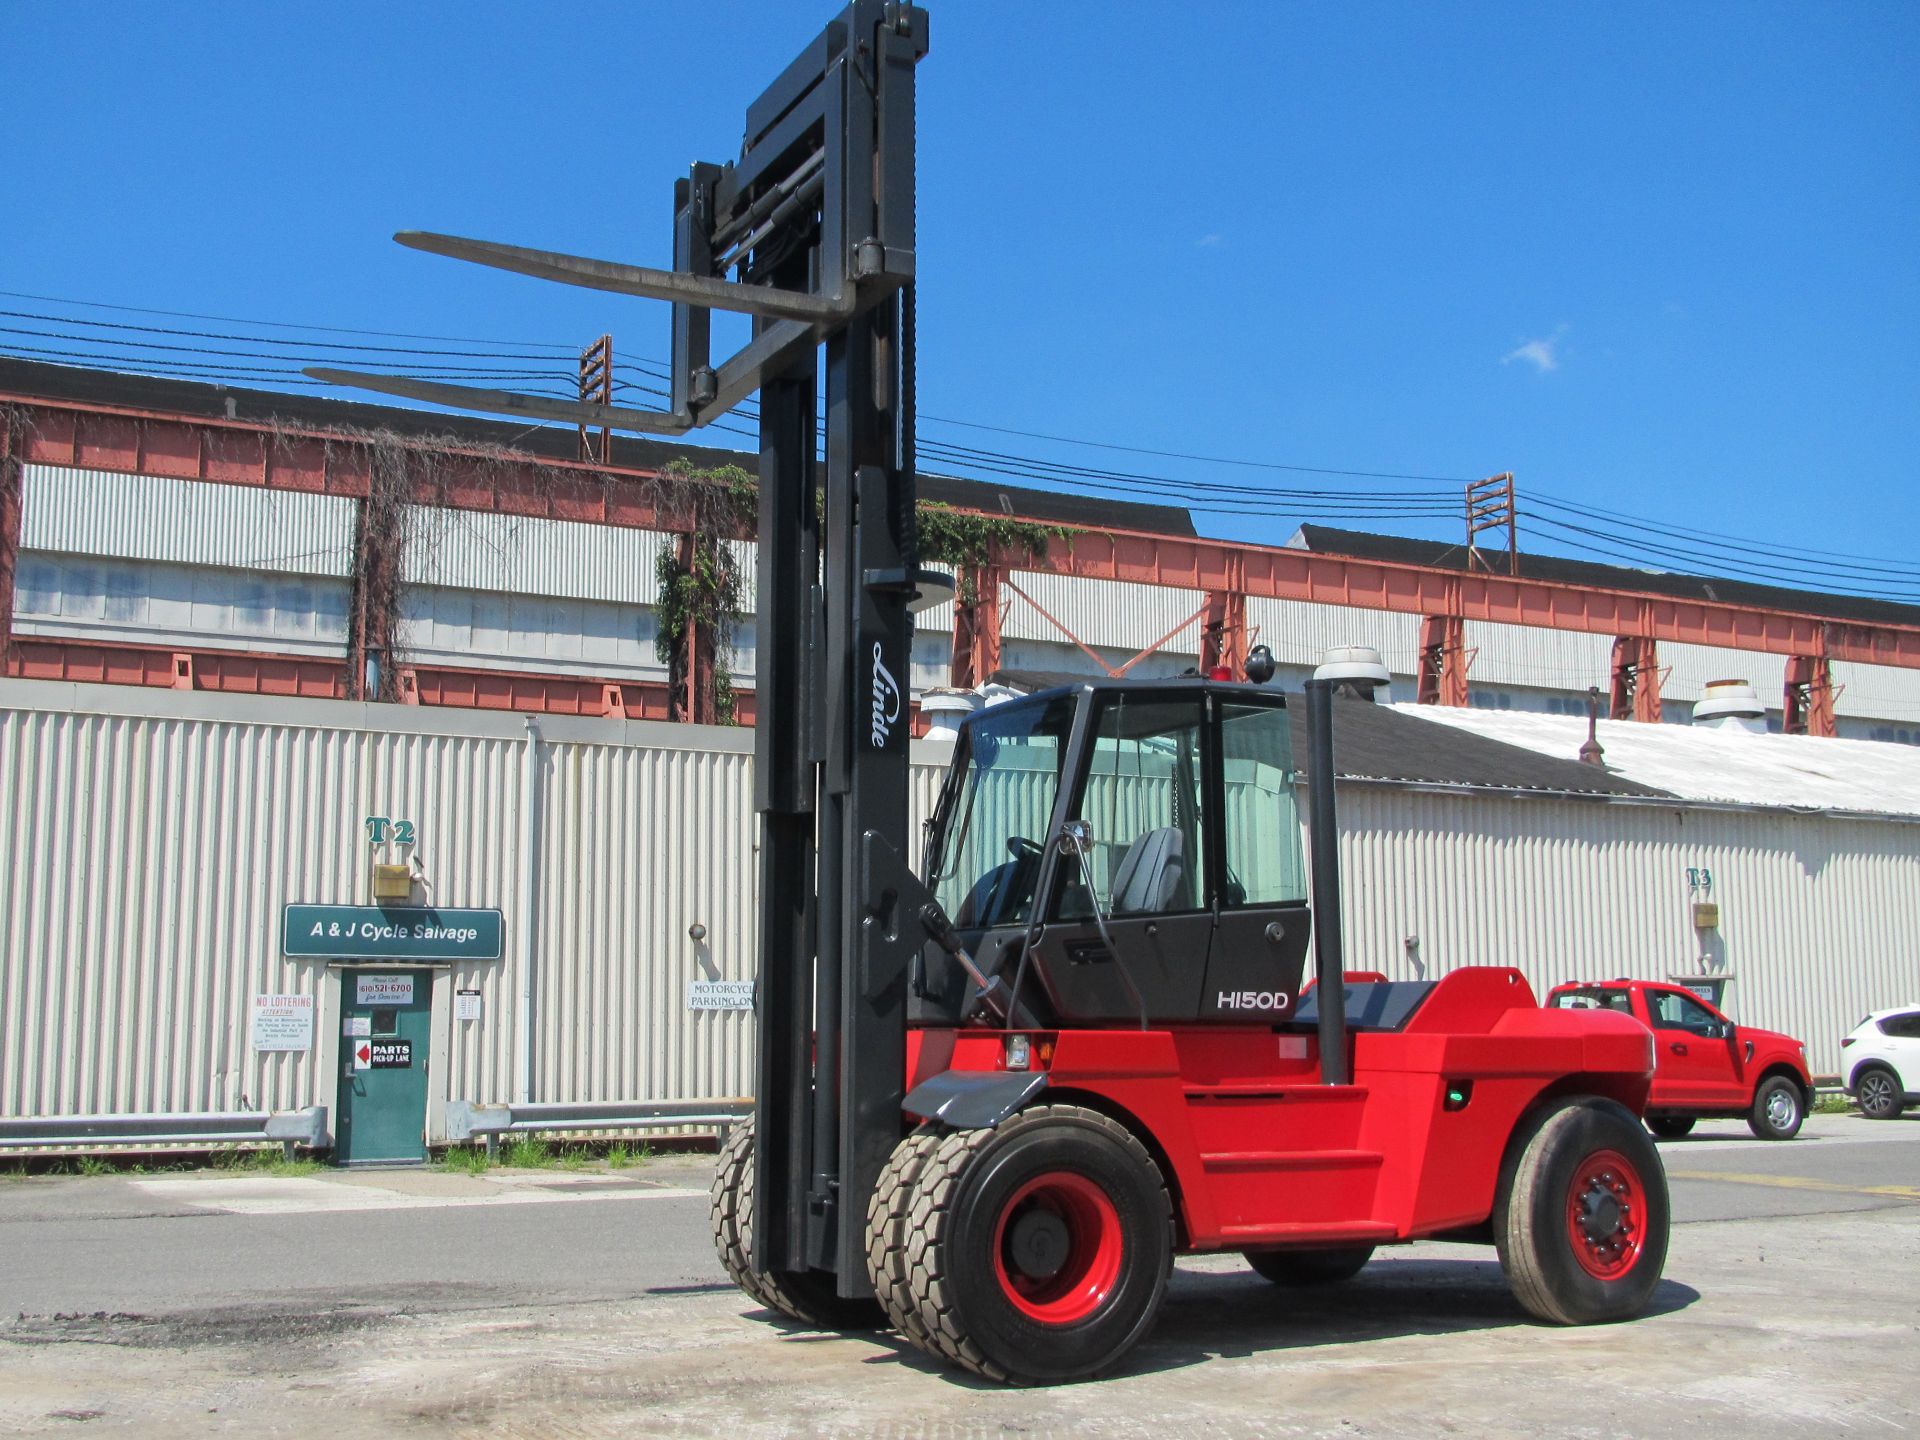 Linde H150D 30,000lb Forklift - Image 7 of 12